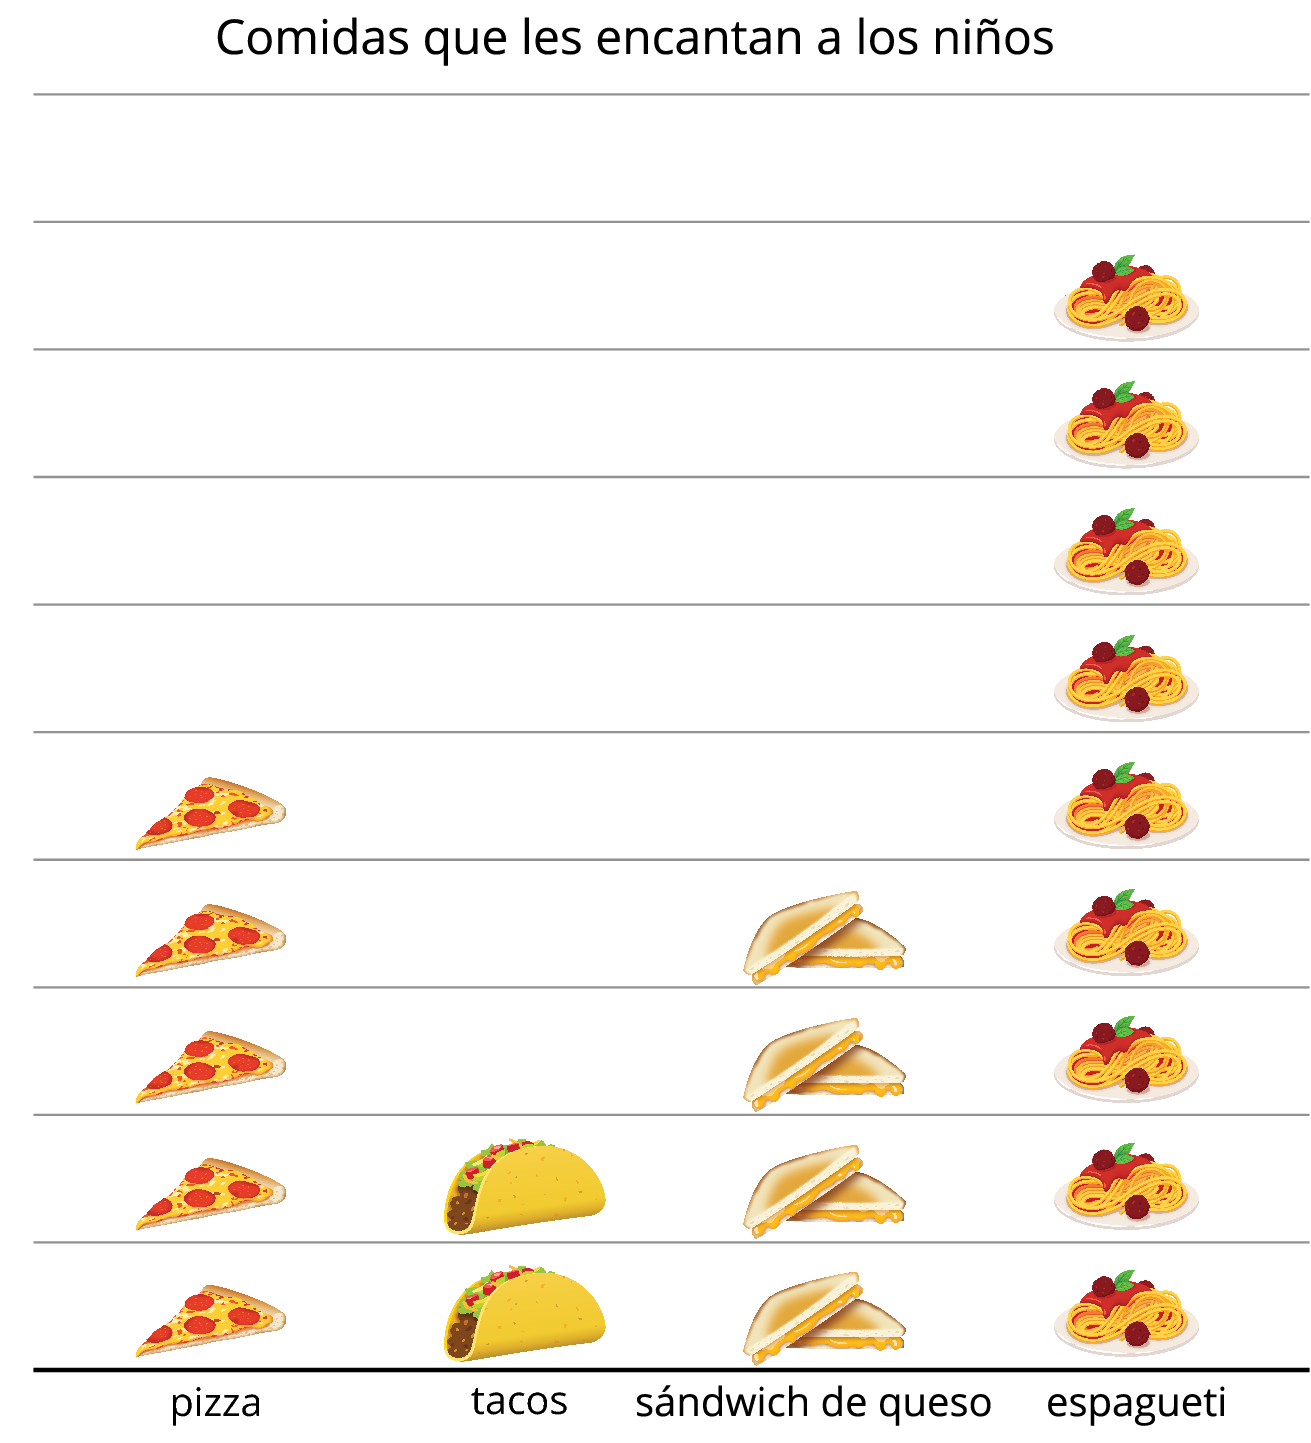 Gráfica de dibujos. “Comidas que les encantan a los niños”. 5 imágenes de pizza. 2 imágenes de taco. 4 imágenes de sándwich de queso. 9 imágenes de espagueti.